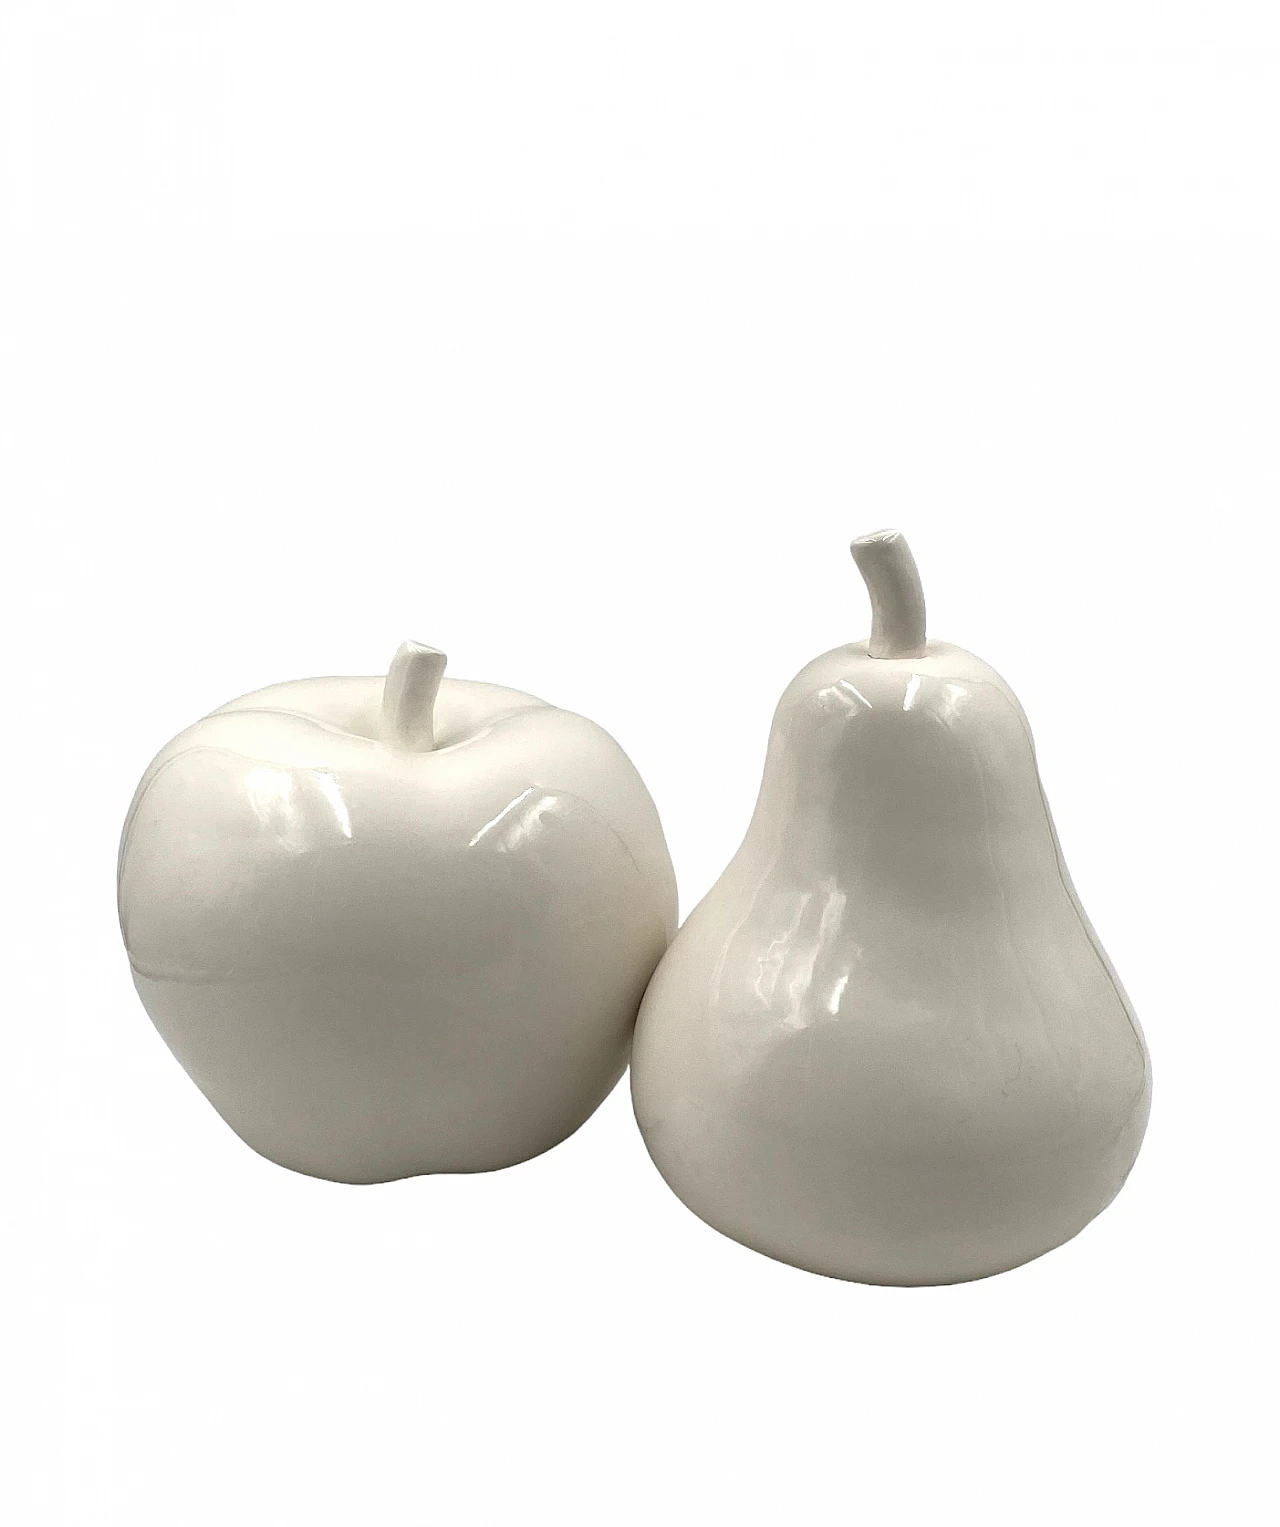 White ceramic apple & pear sculptures, 1980s 10